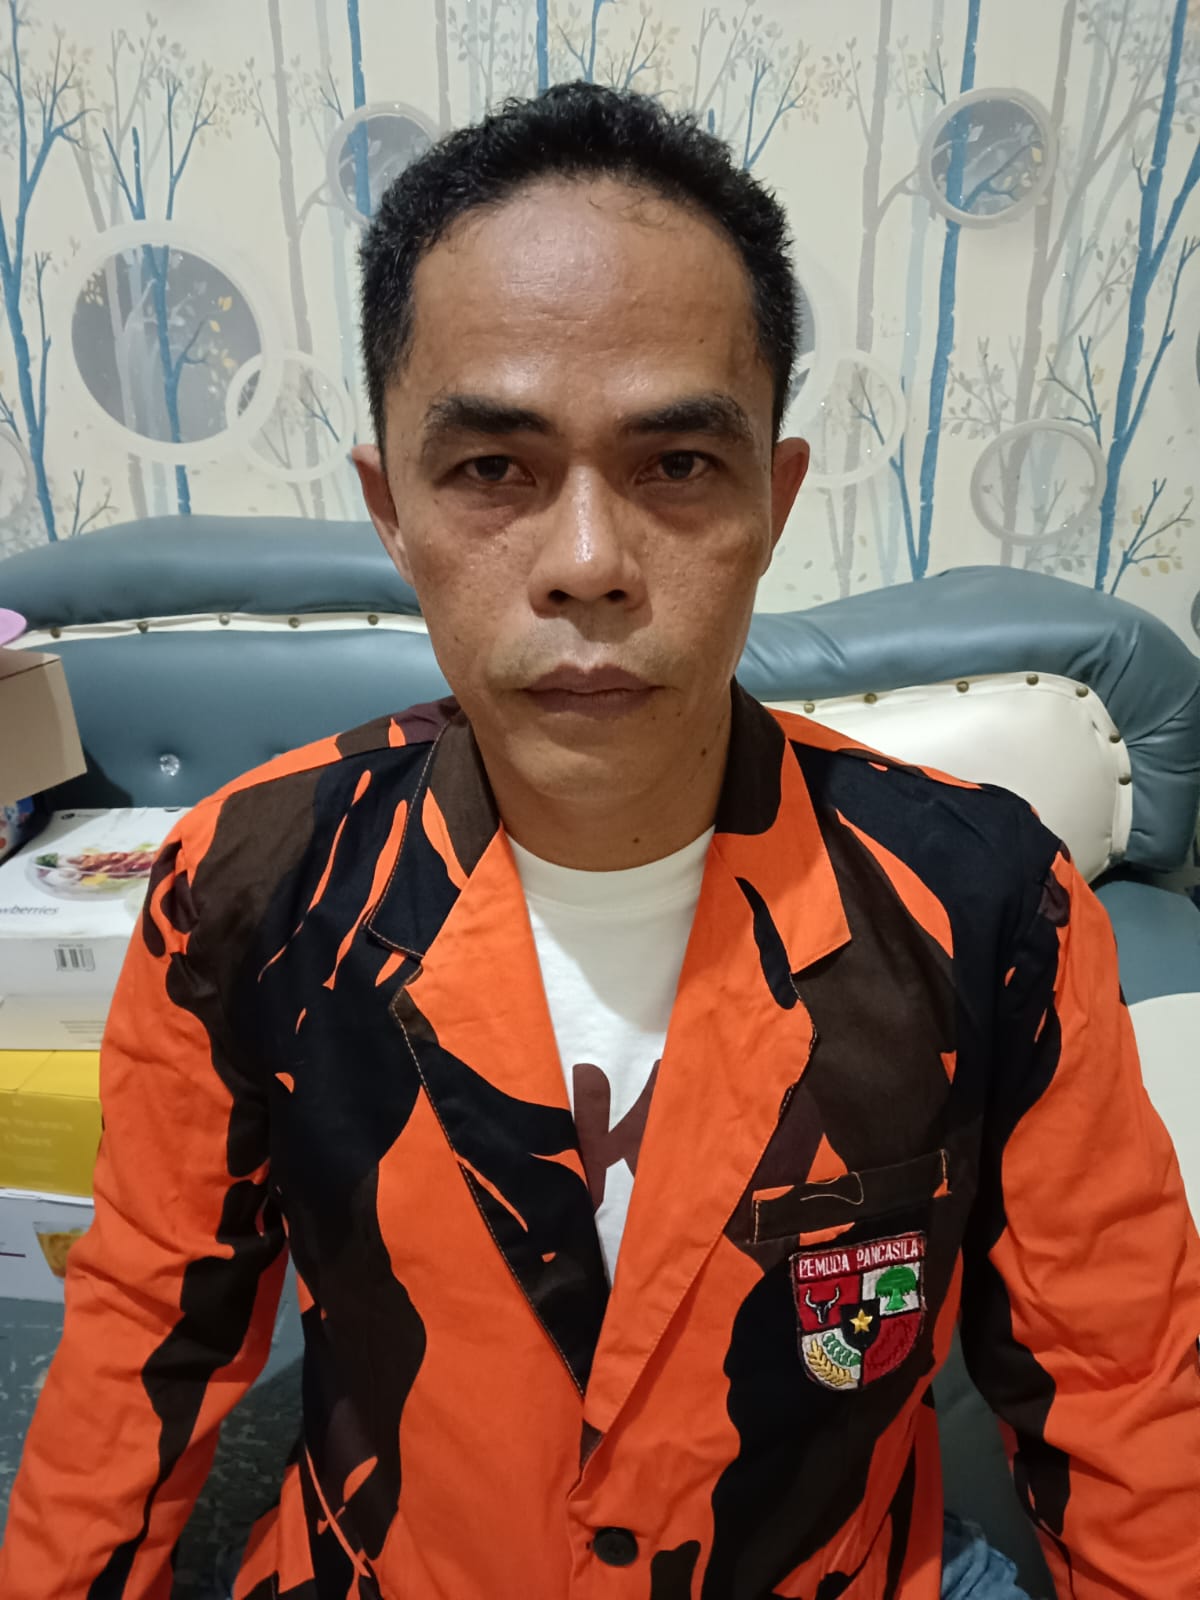 Ketua ranting Pemuda Pancasila Tegal Sari II Medan area meminta pihak kepolisian agar ditindak tegas hukum yang berlaku